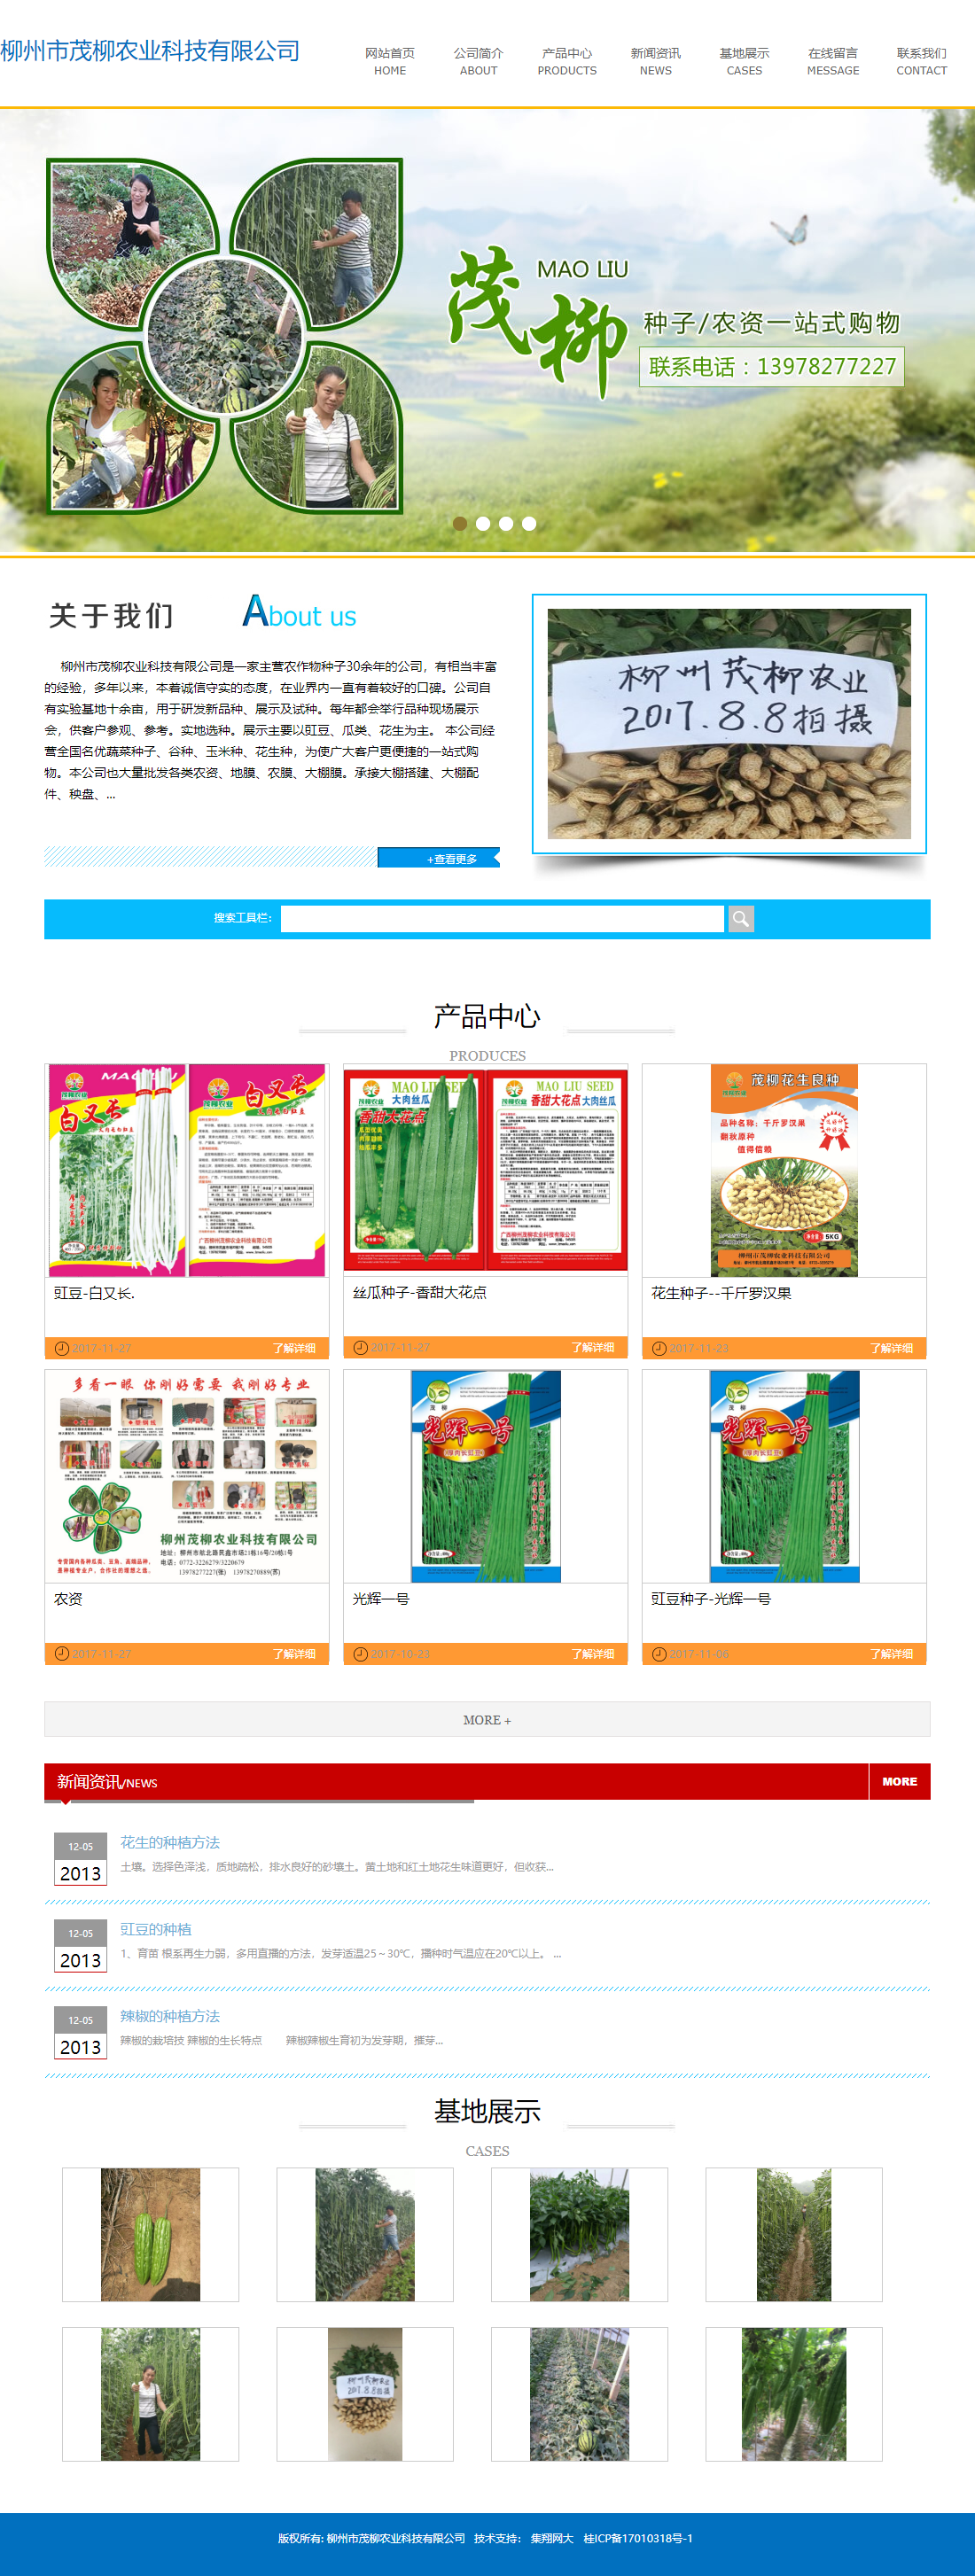 柳州市茂柳农业科技有限公司网站案例